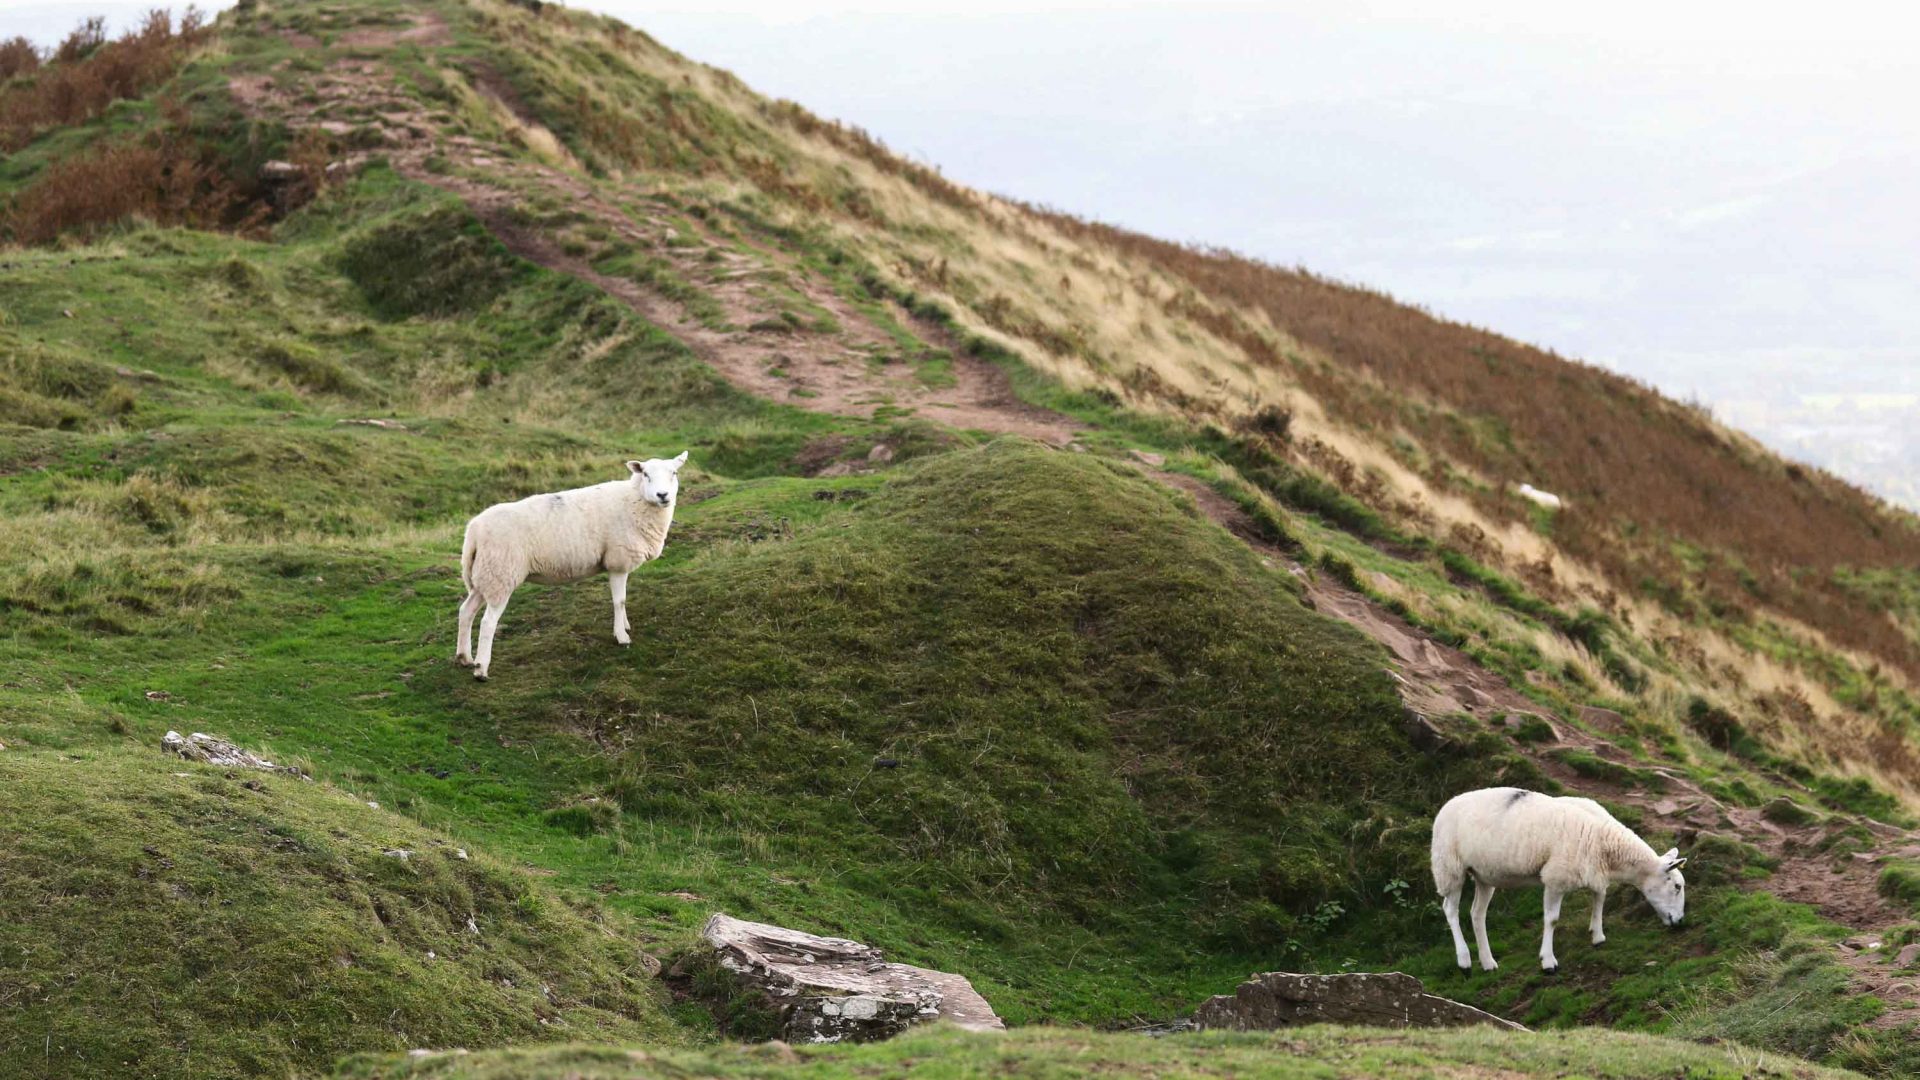 Sheep graze peacefully in the Hebrides, Scotland.